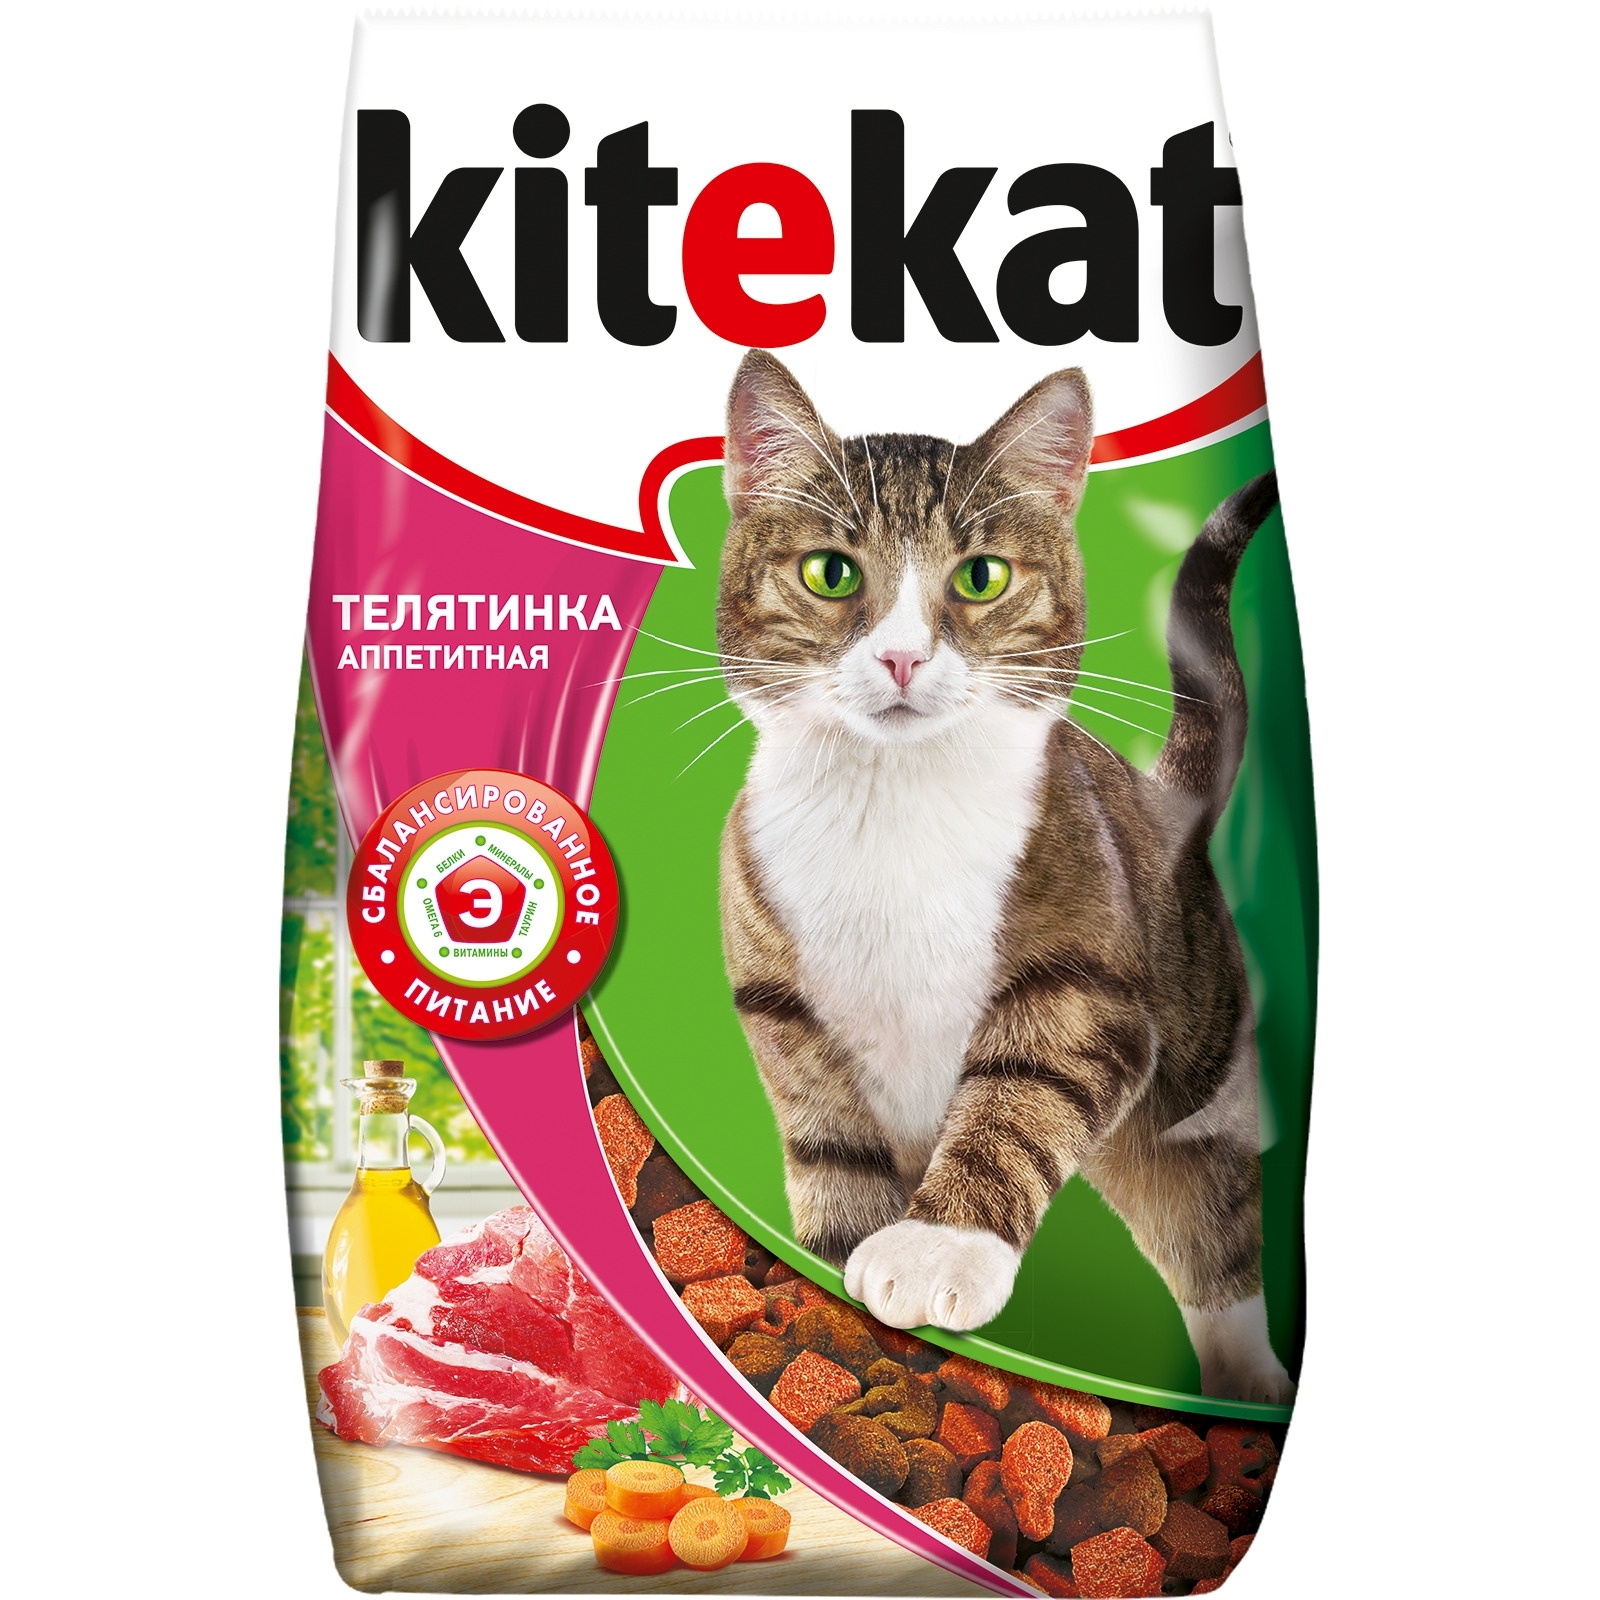 Сухой корм для кошек KiteKat Аппетитная телятинка, 1,9 кг